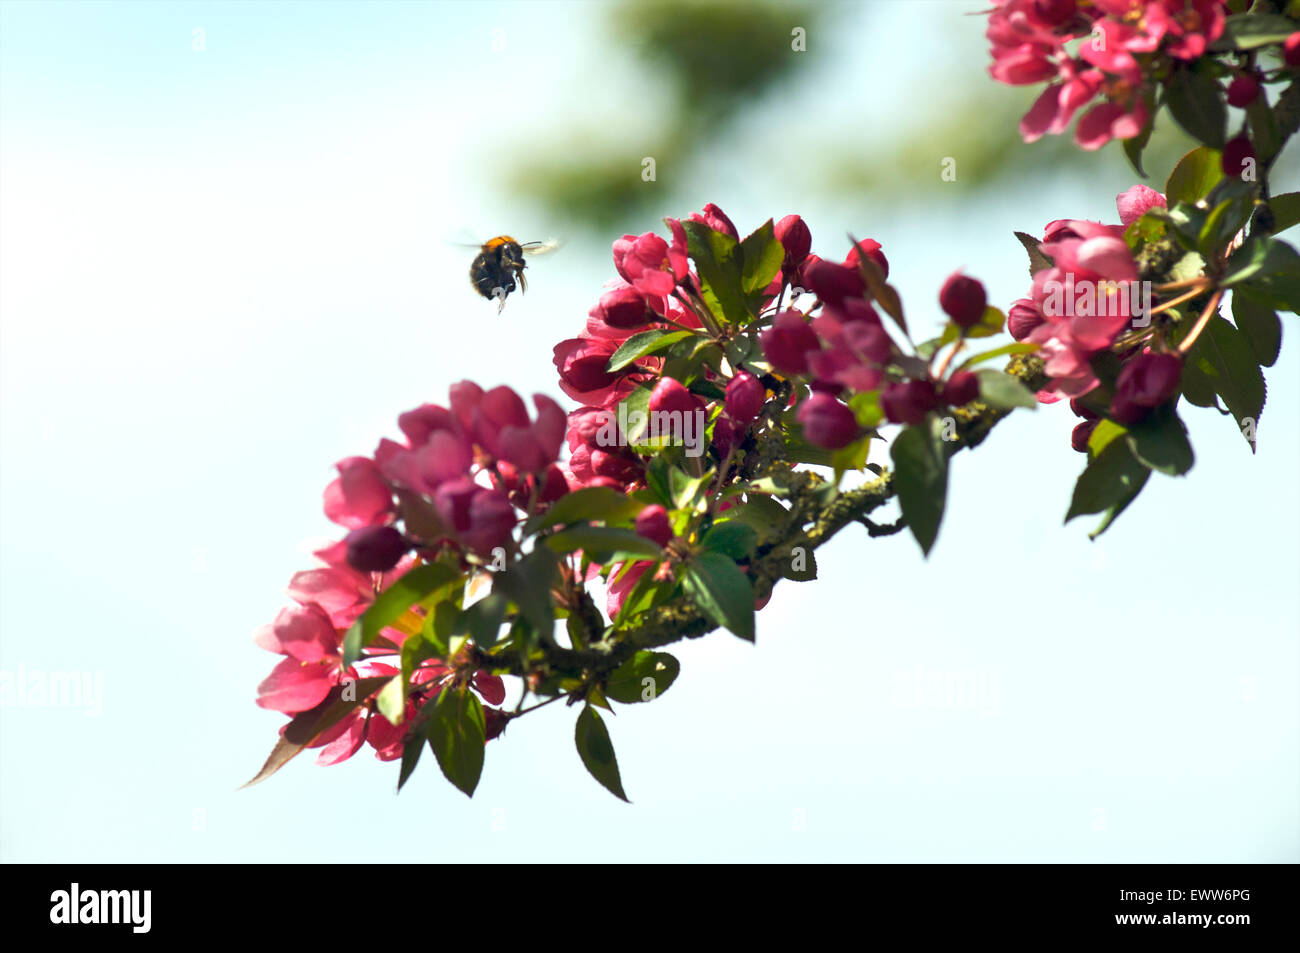 Bienen bestäuben Blüten von einer blühenden Pflaumenbaum Stockfoto